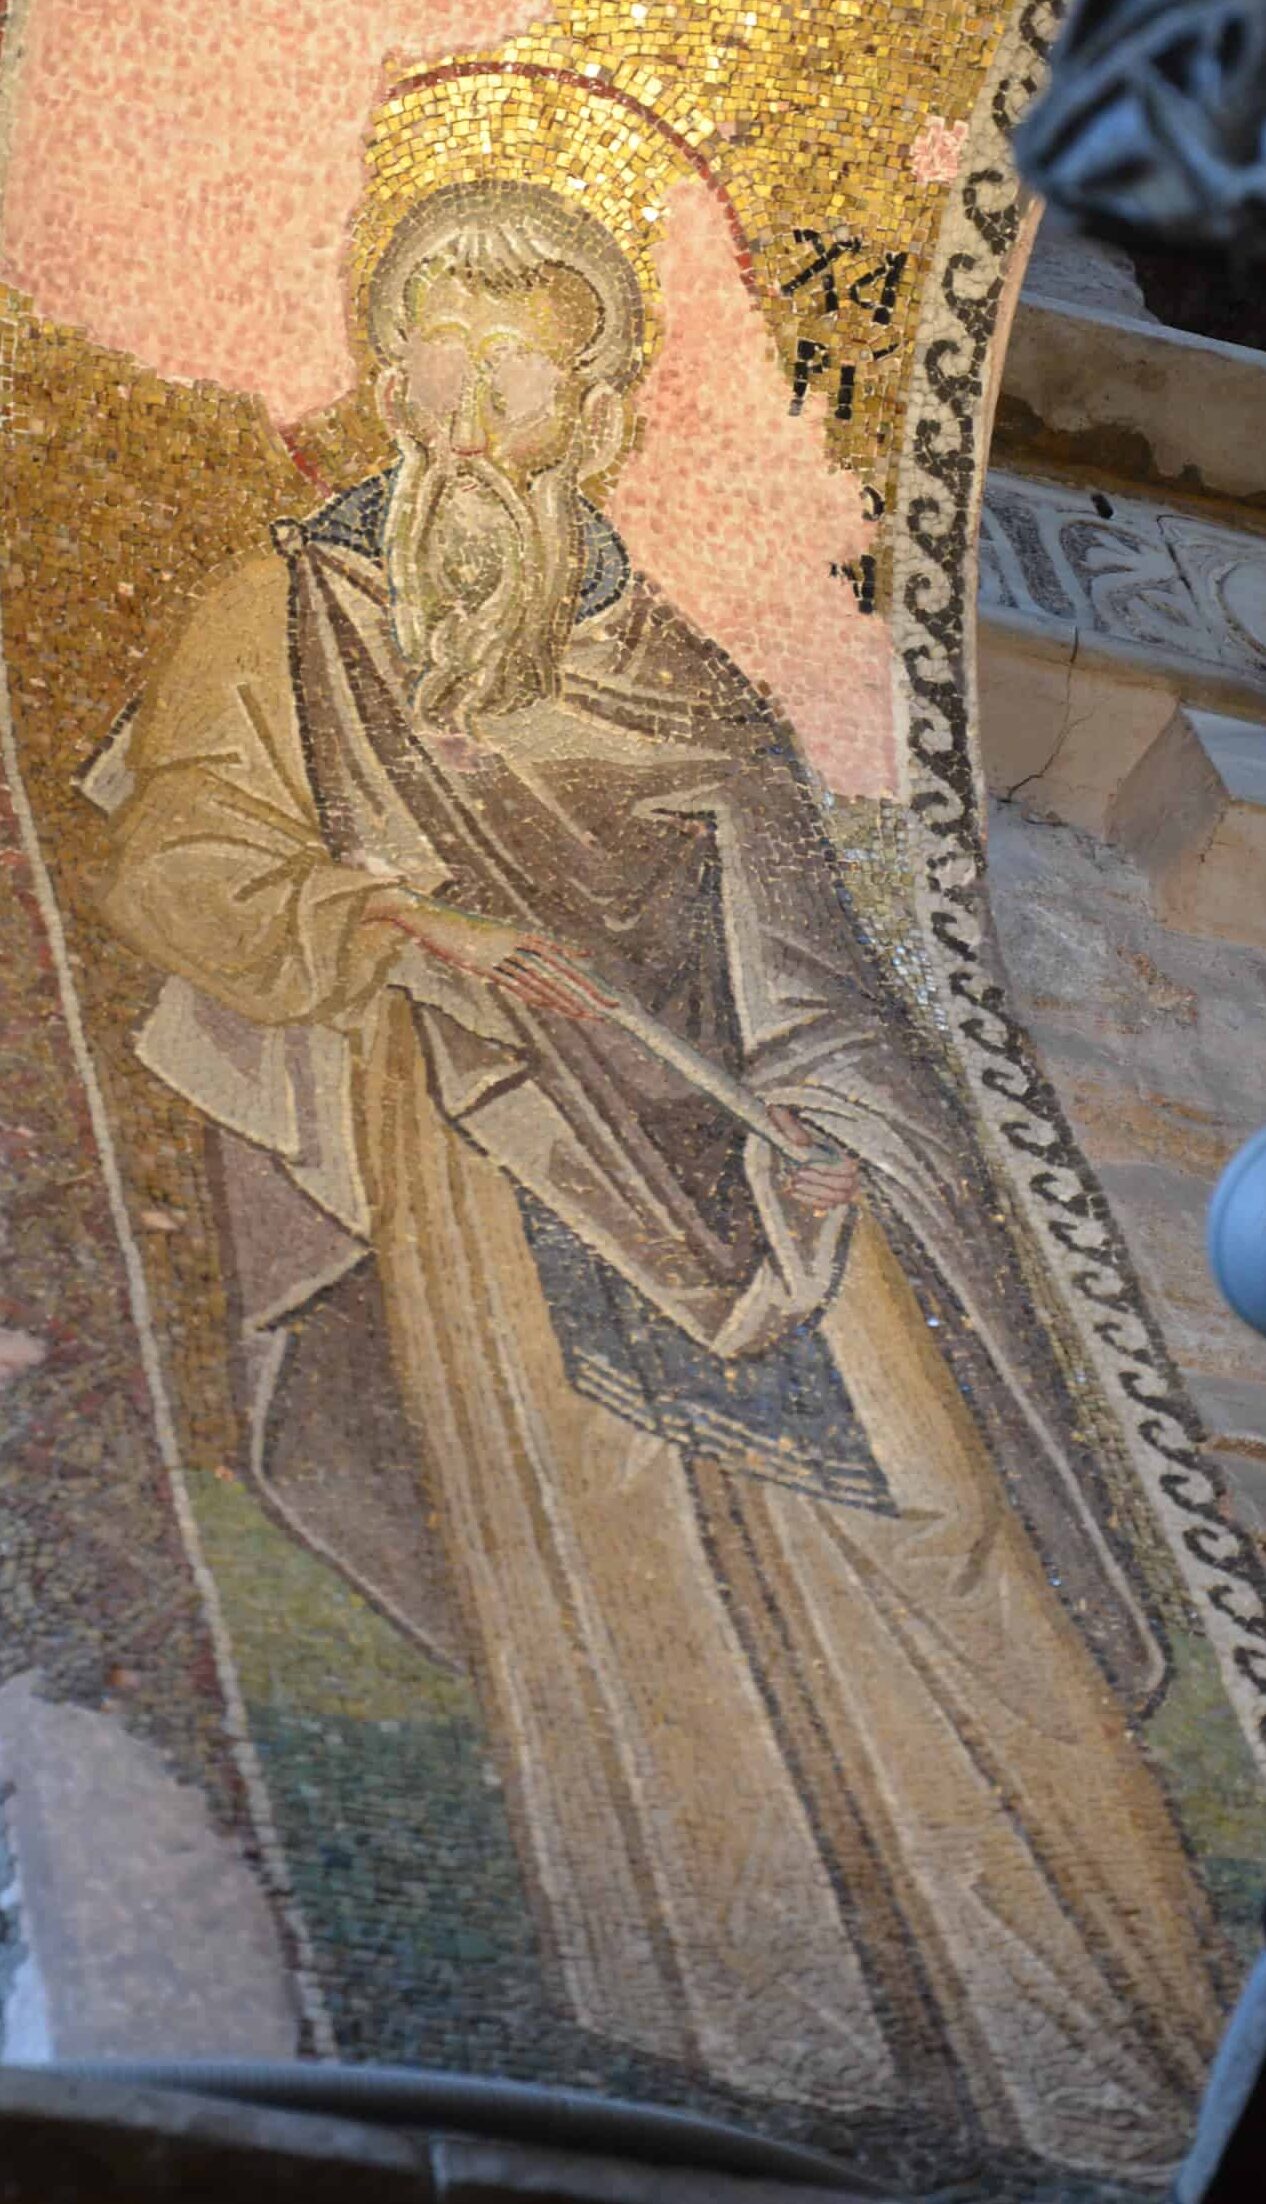 St. Chariton the Confessor